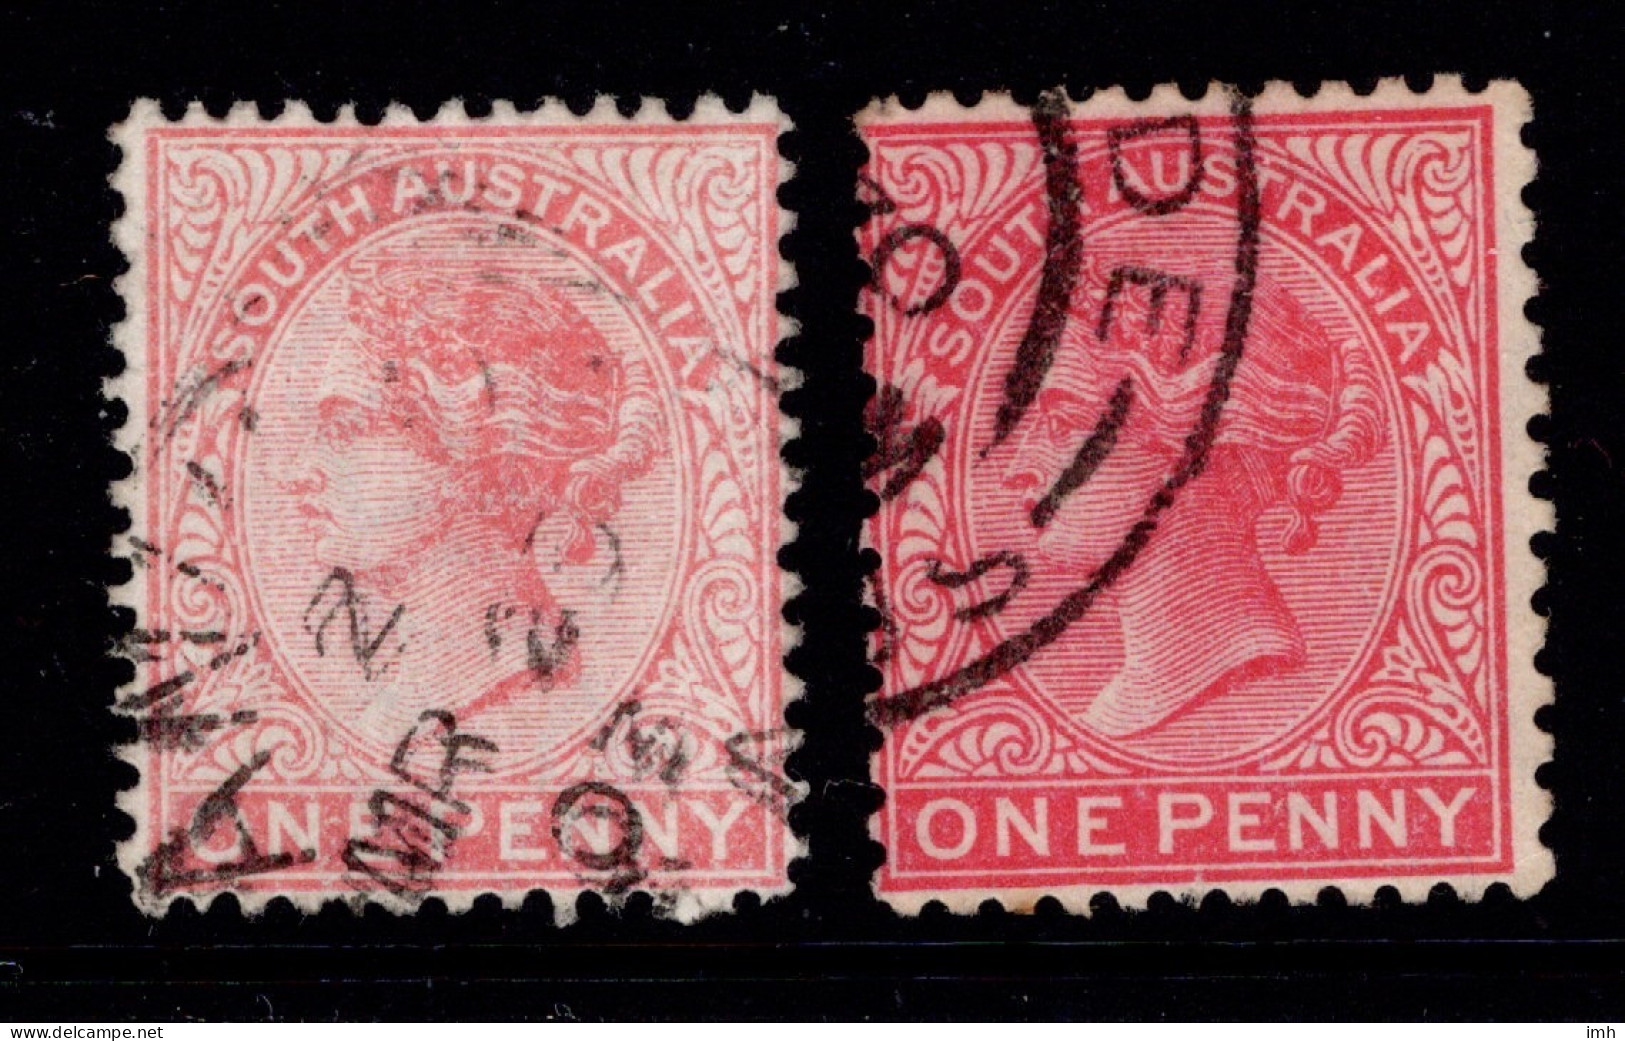 1876-1904 SG 179 1d Rosine & 179a 1d Scarlet W13 P12x12.5  £1.90 - Usati